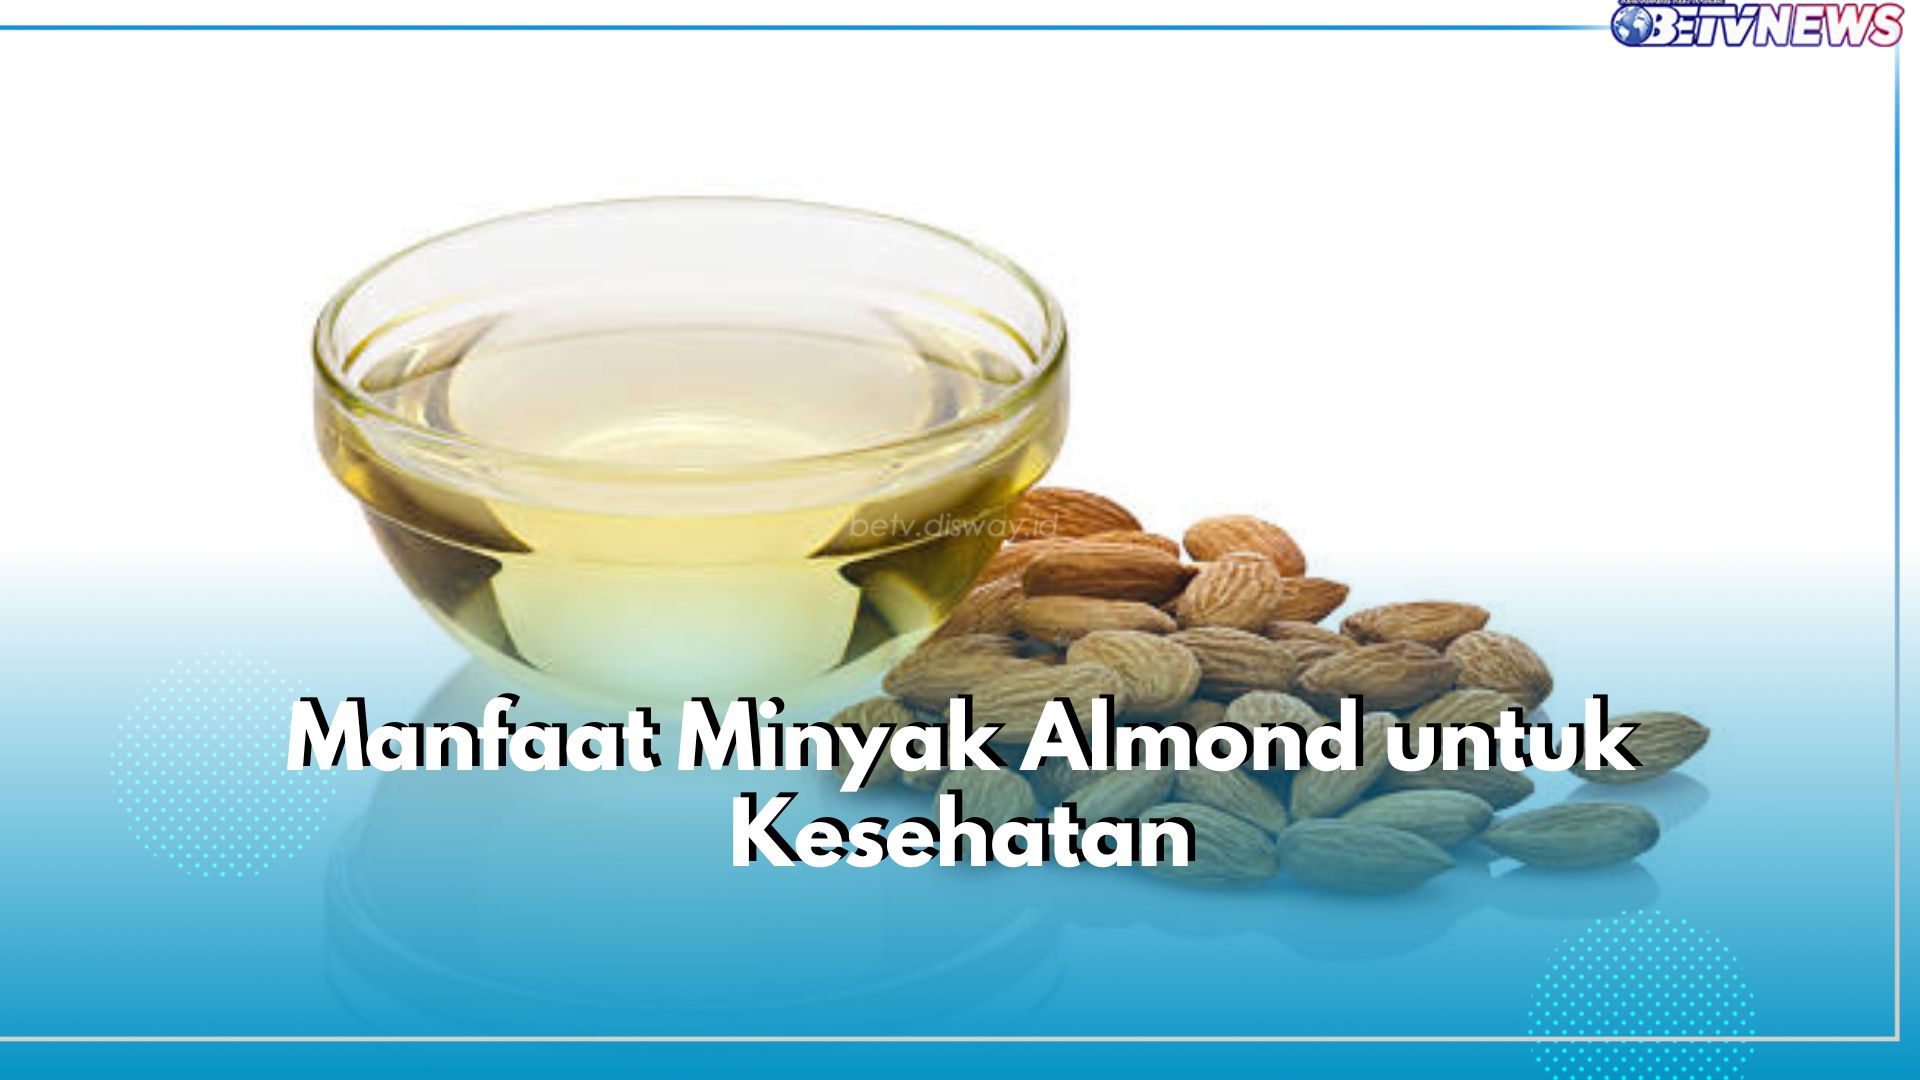 5 Manfaat Minyak Almond untuk Kesehatan, Baik untuk Kesehatan Jantung